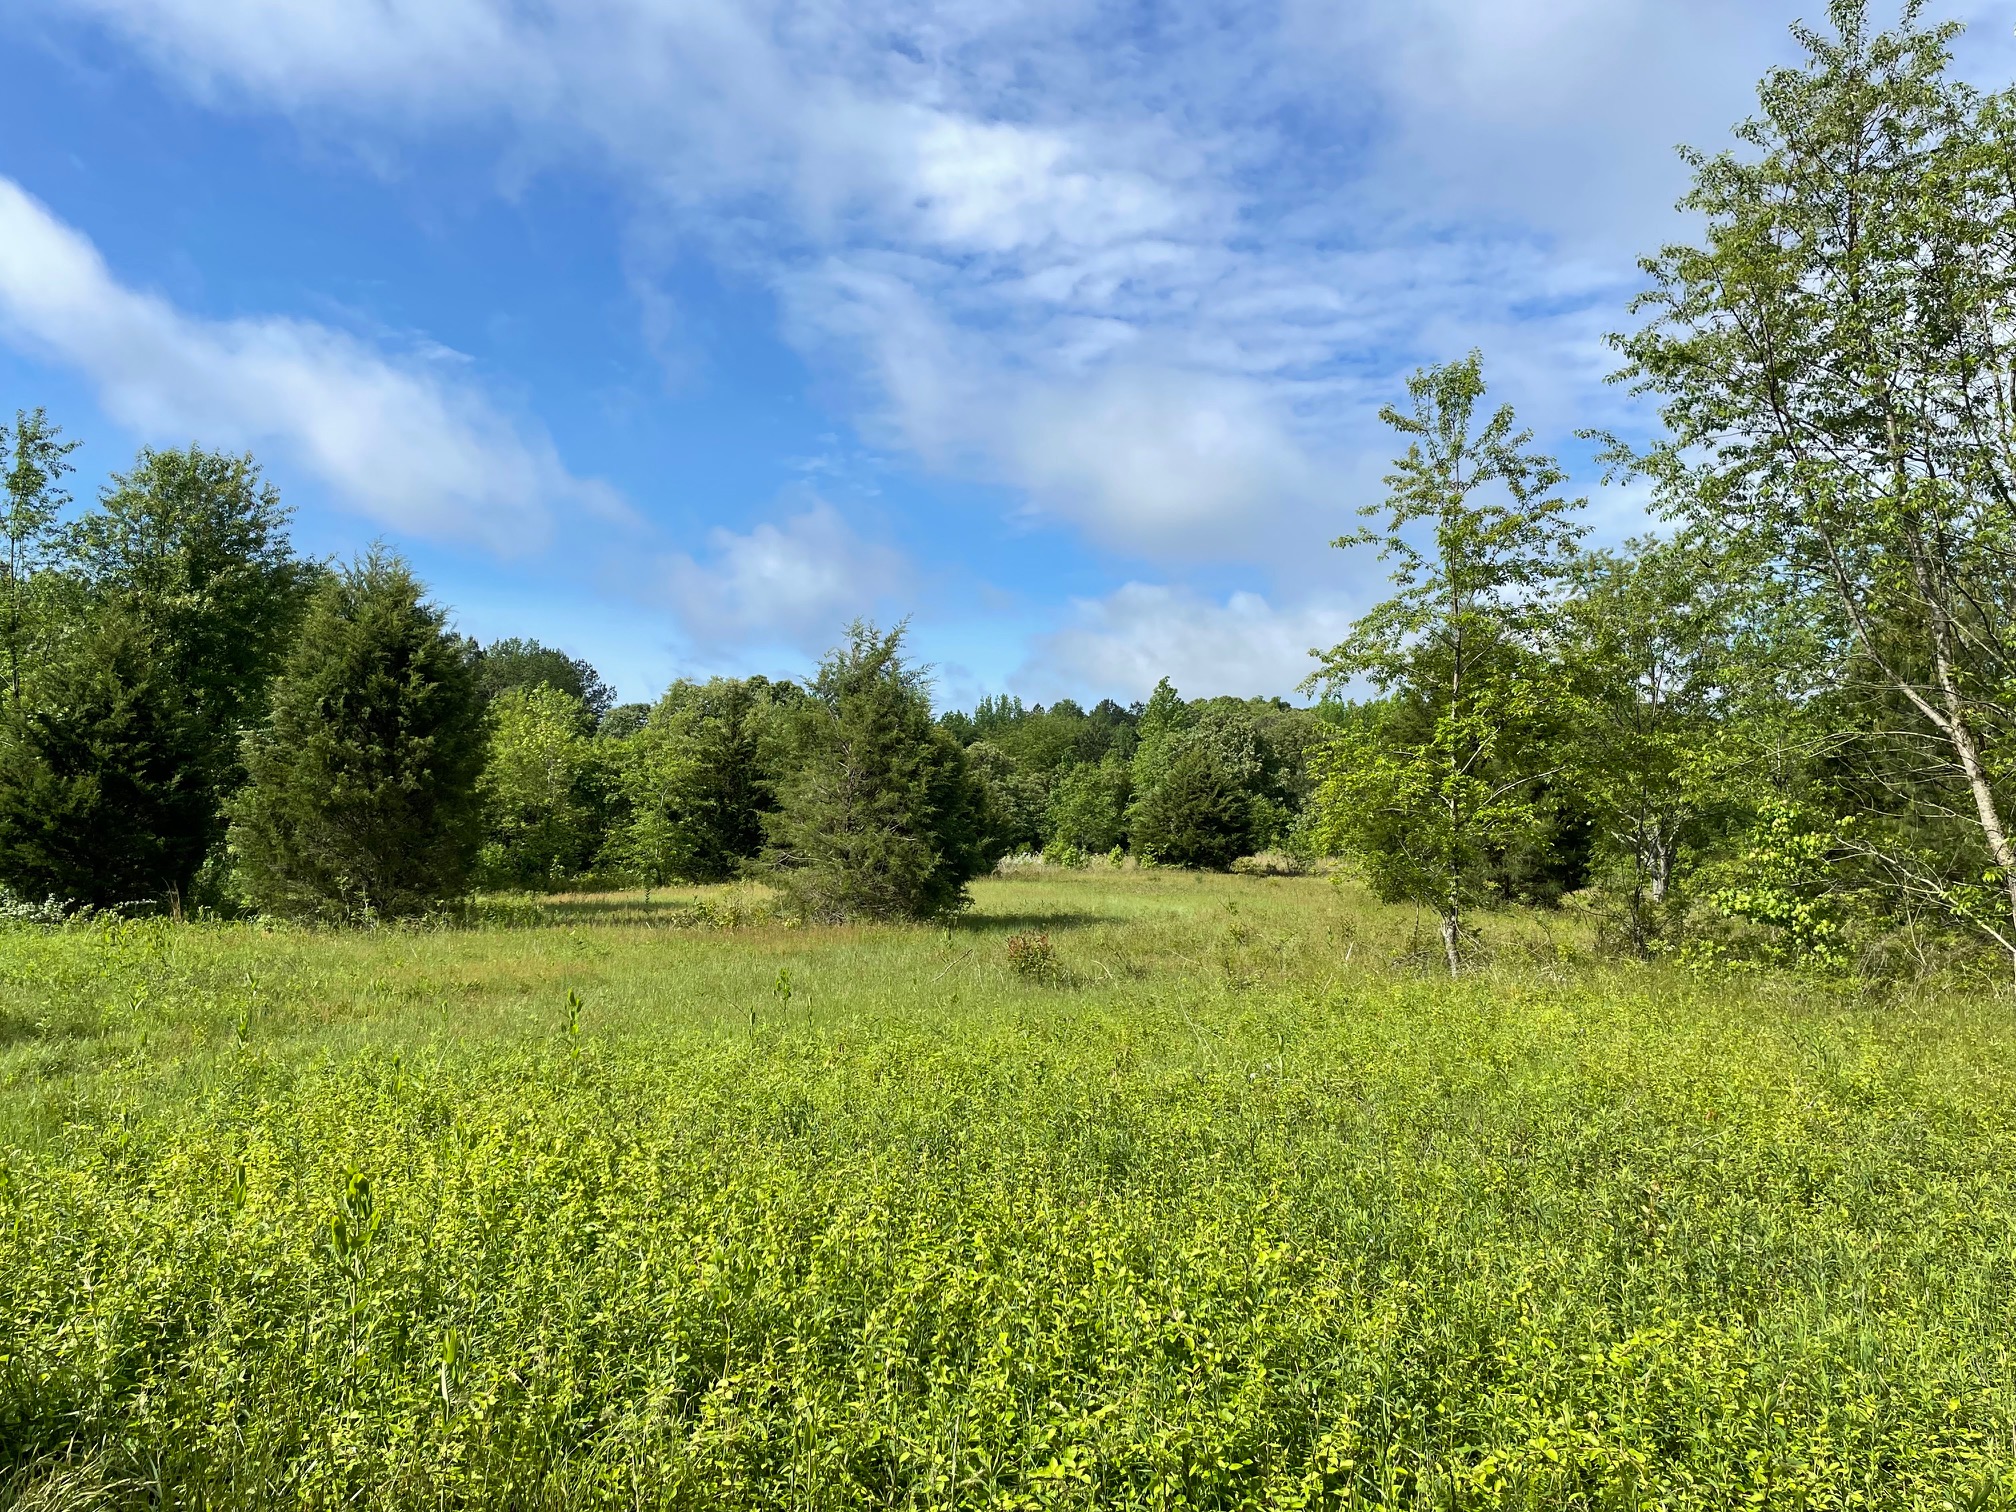 An Adkins Arboretum meadow